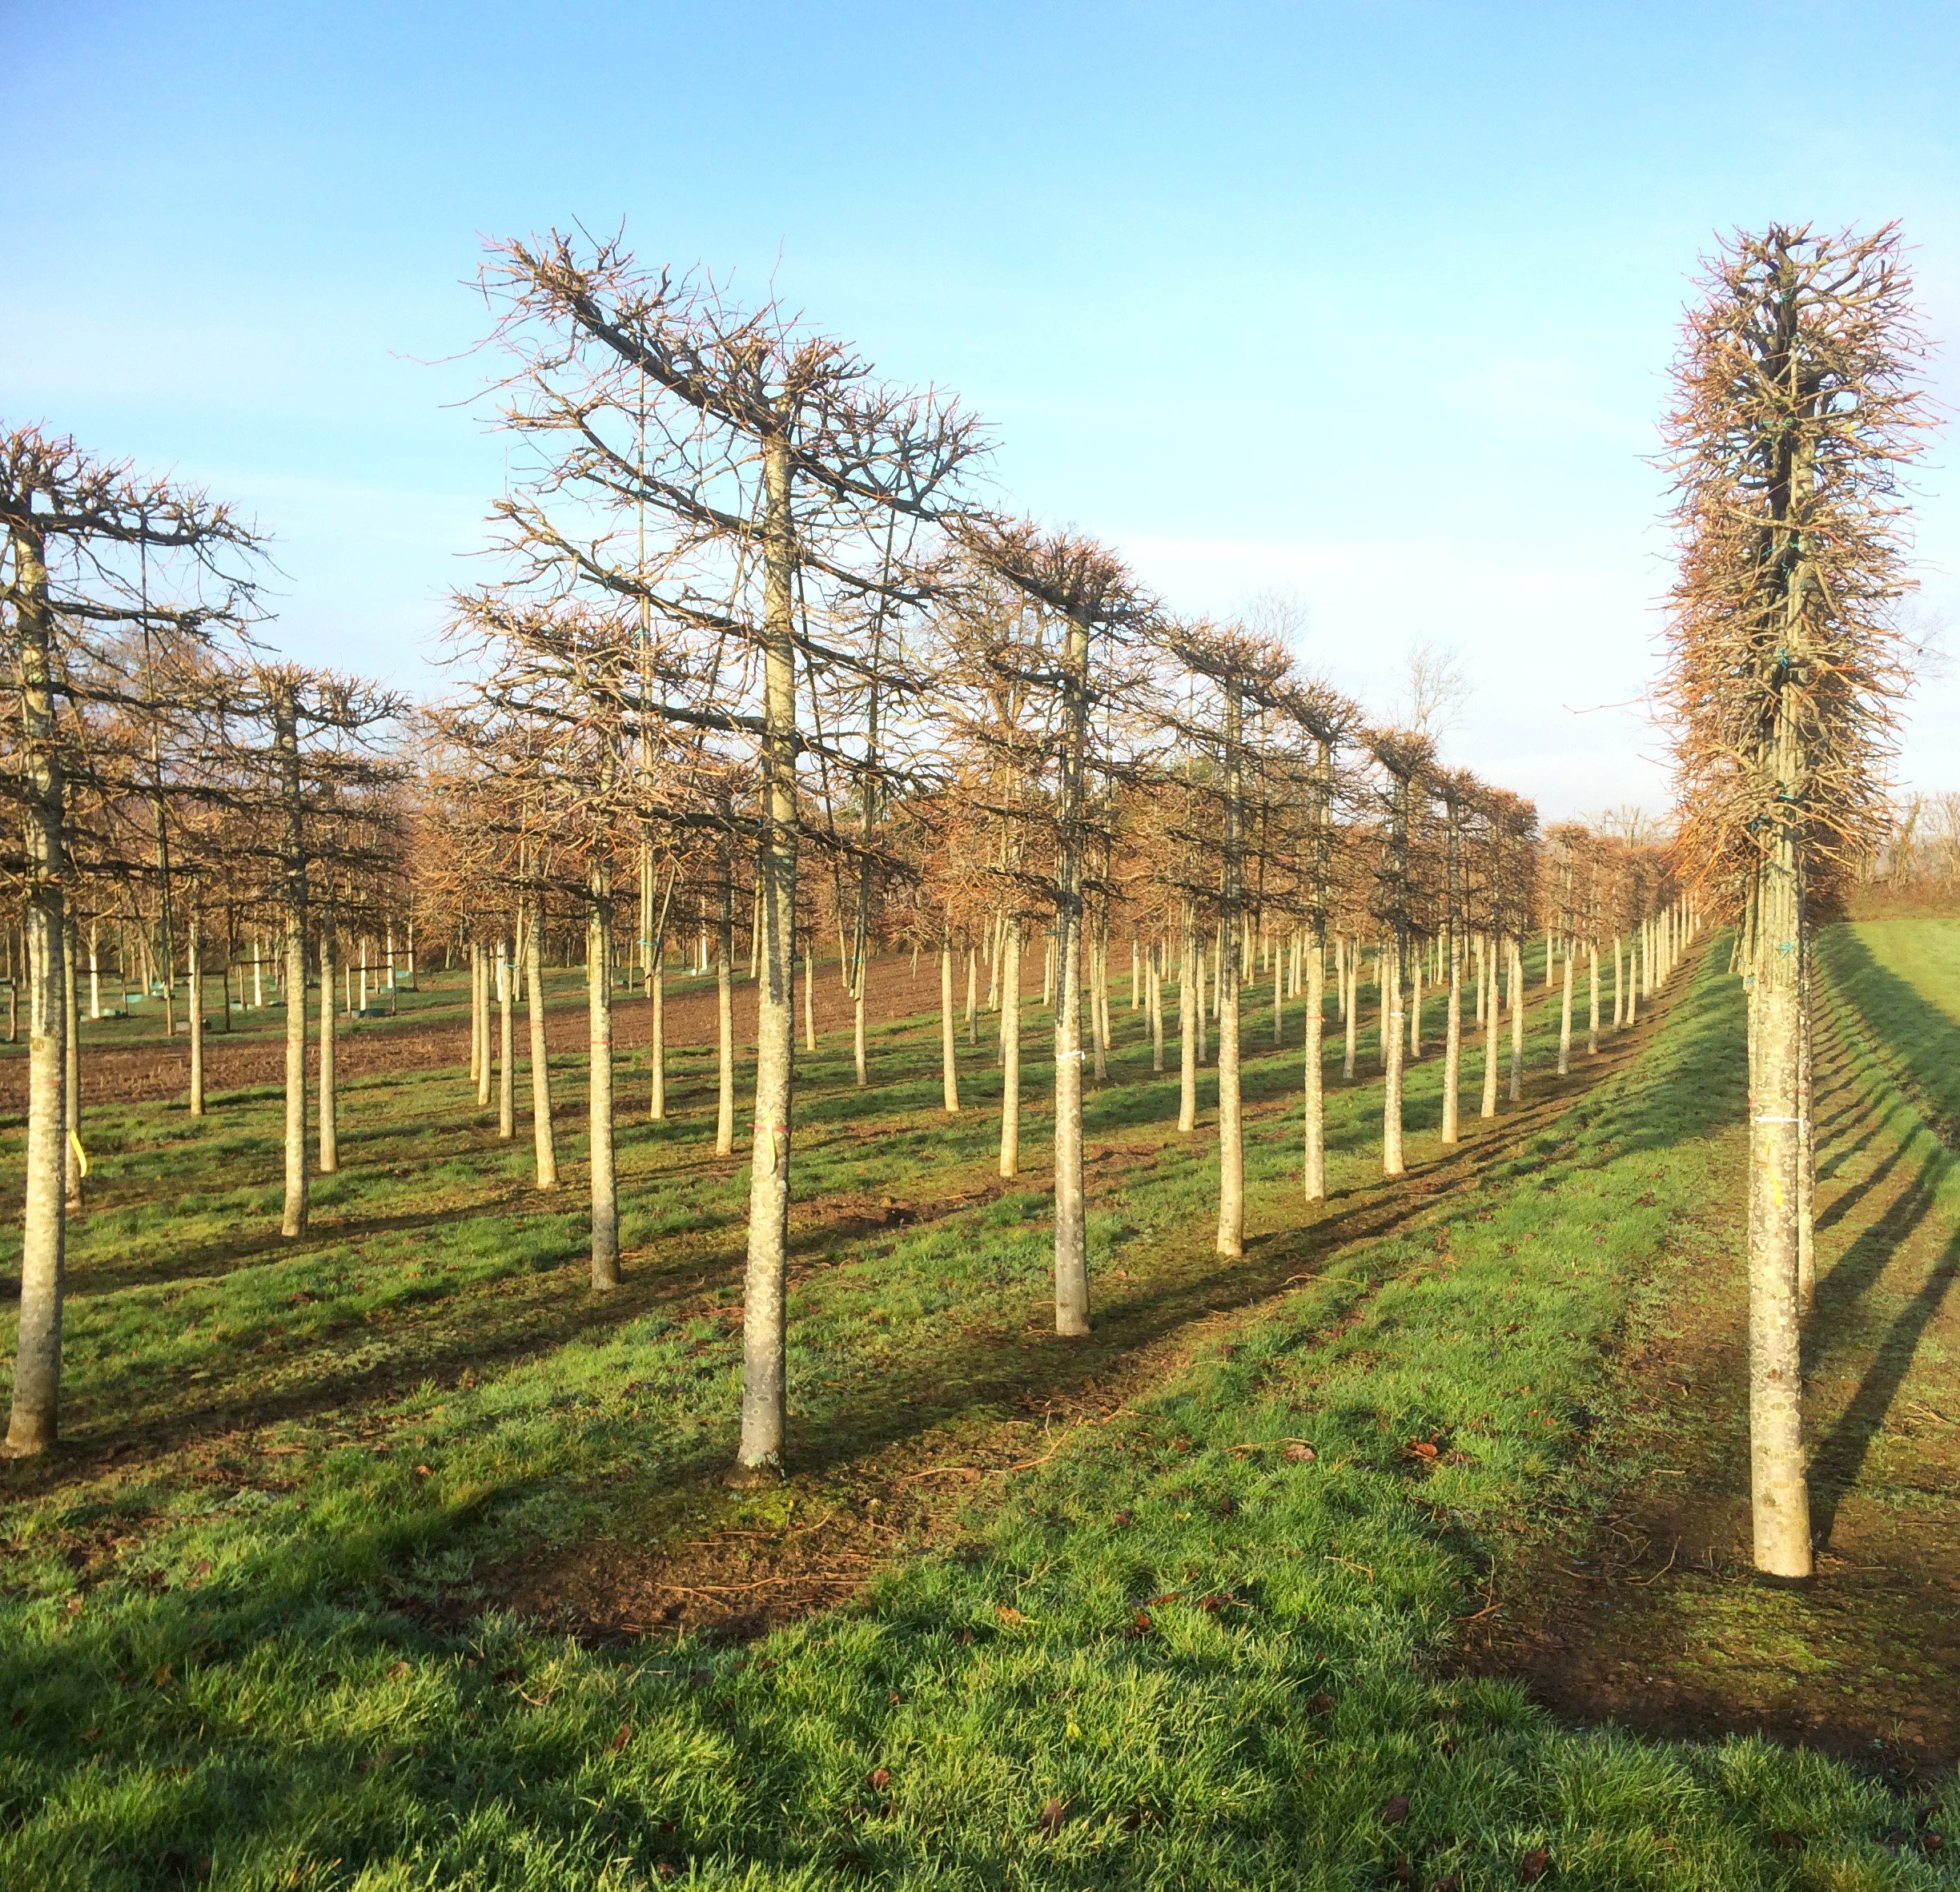 Tilia euchlora pleached trees in winter growing in rows in field